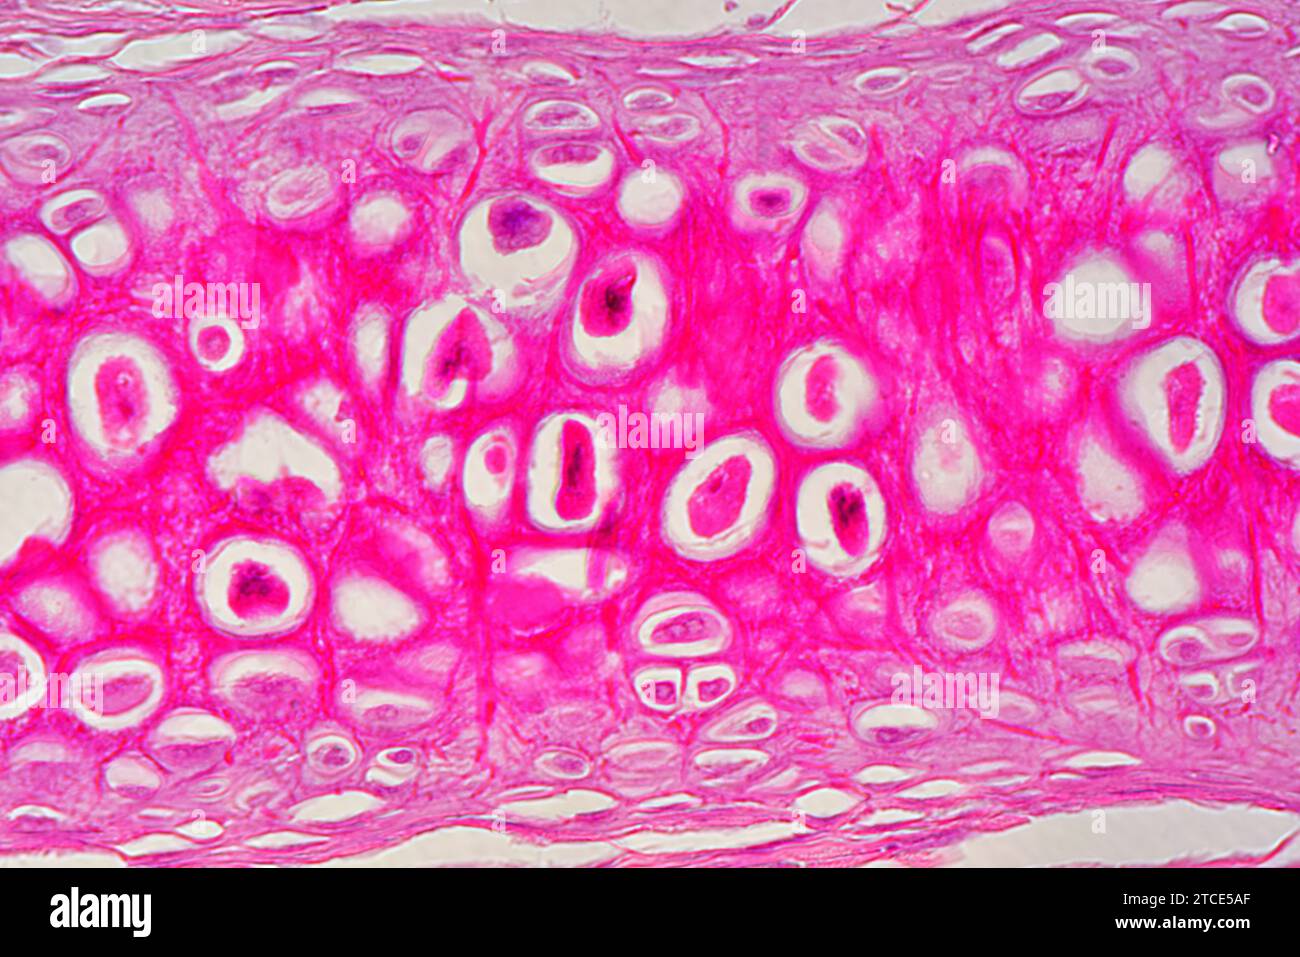 Tissu cartilagineux élastique de l'oreille montrant les chondrocytes, les fibres d'élastine et la matrice. Microscope optique X400. Banque D'Images